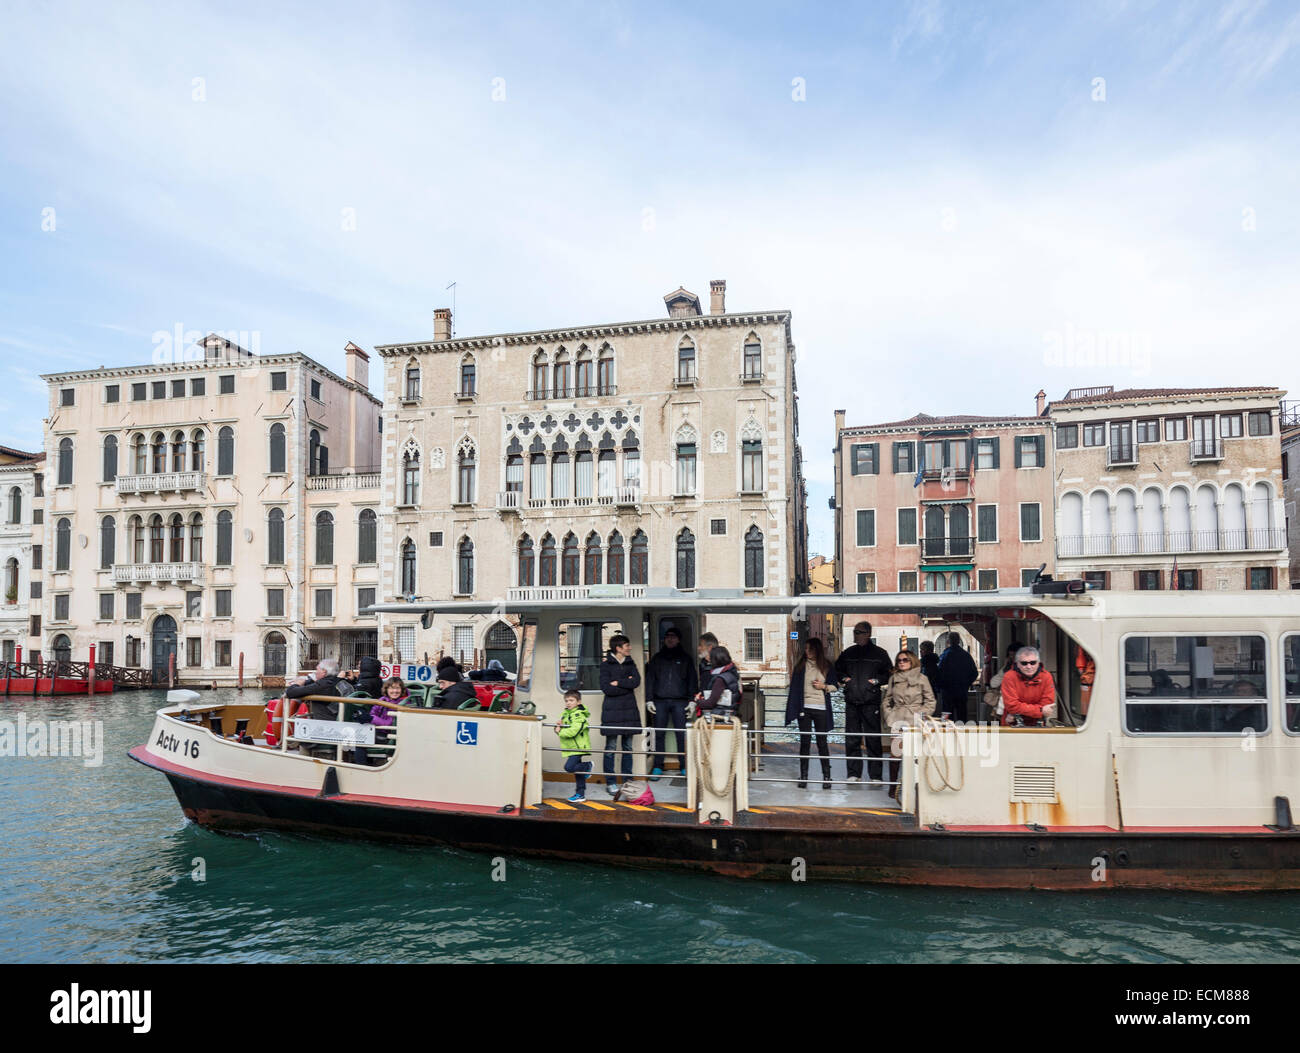 Vaporetto auf dem Canal Grande, Venedig, Italien Stockfoto